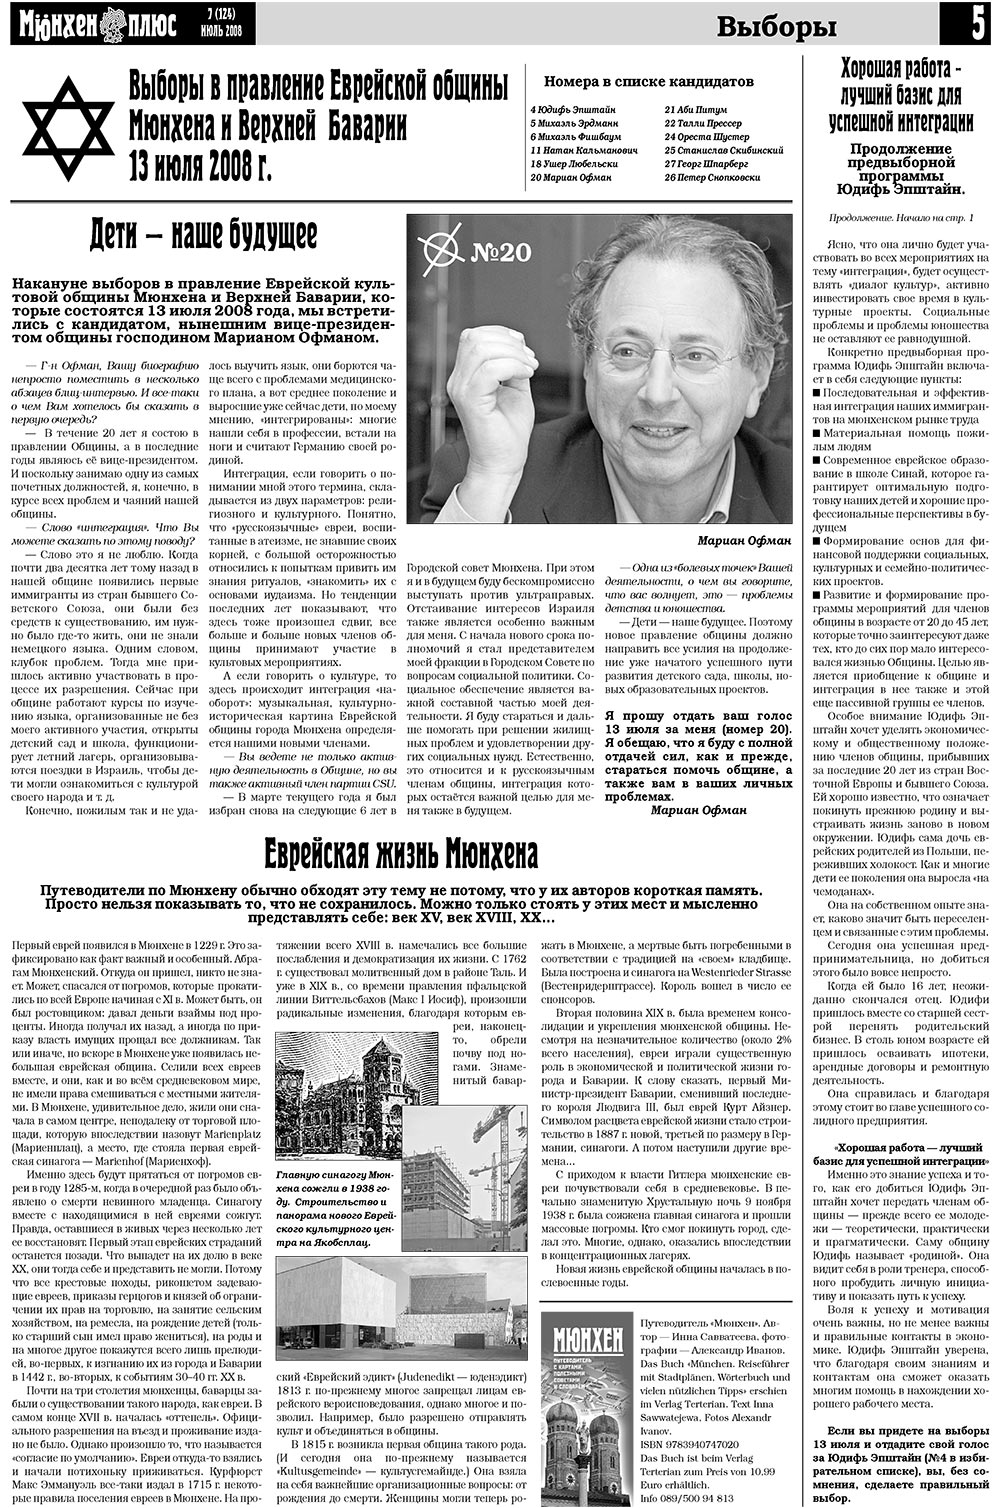 Германия плюс (газета). 2008 год, номер 7, стр. 7